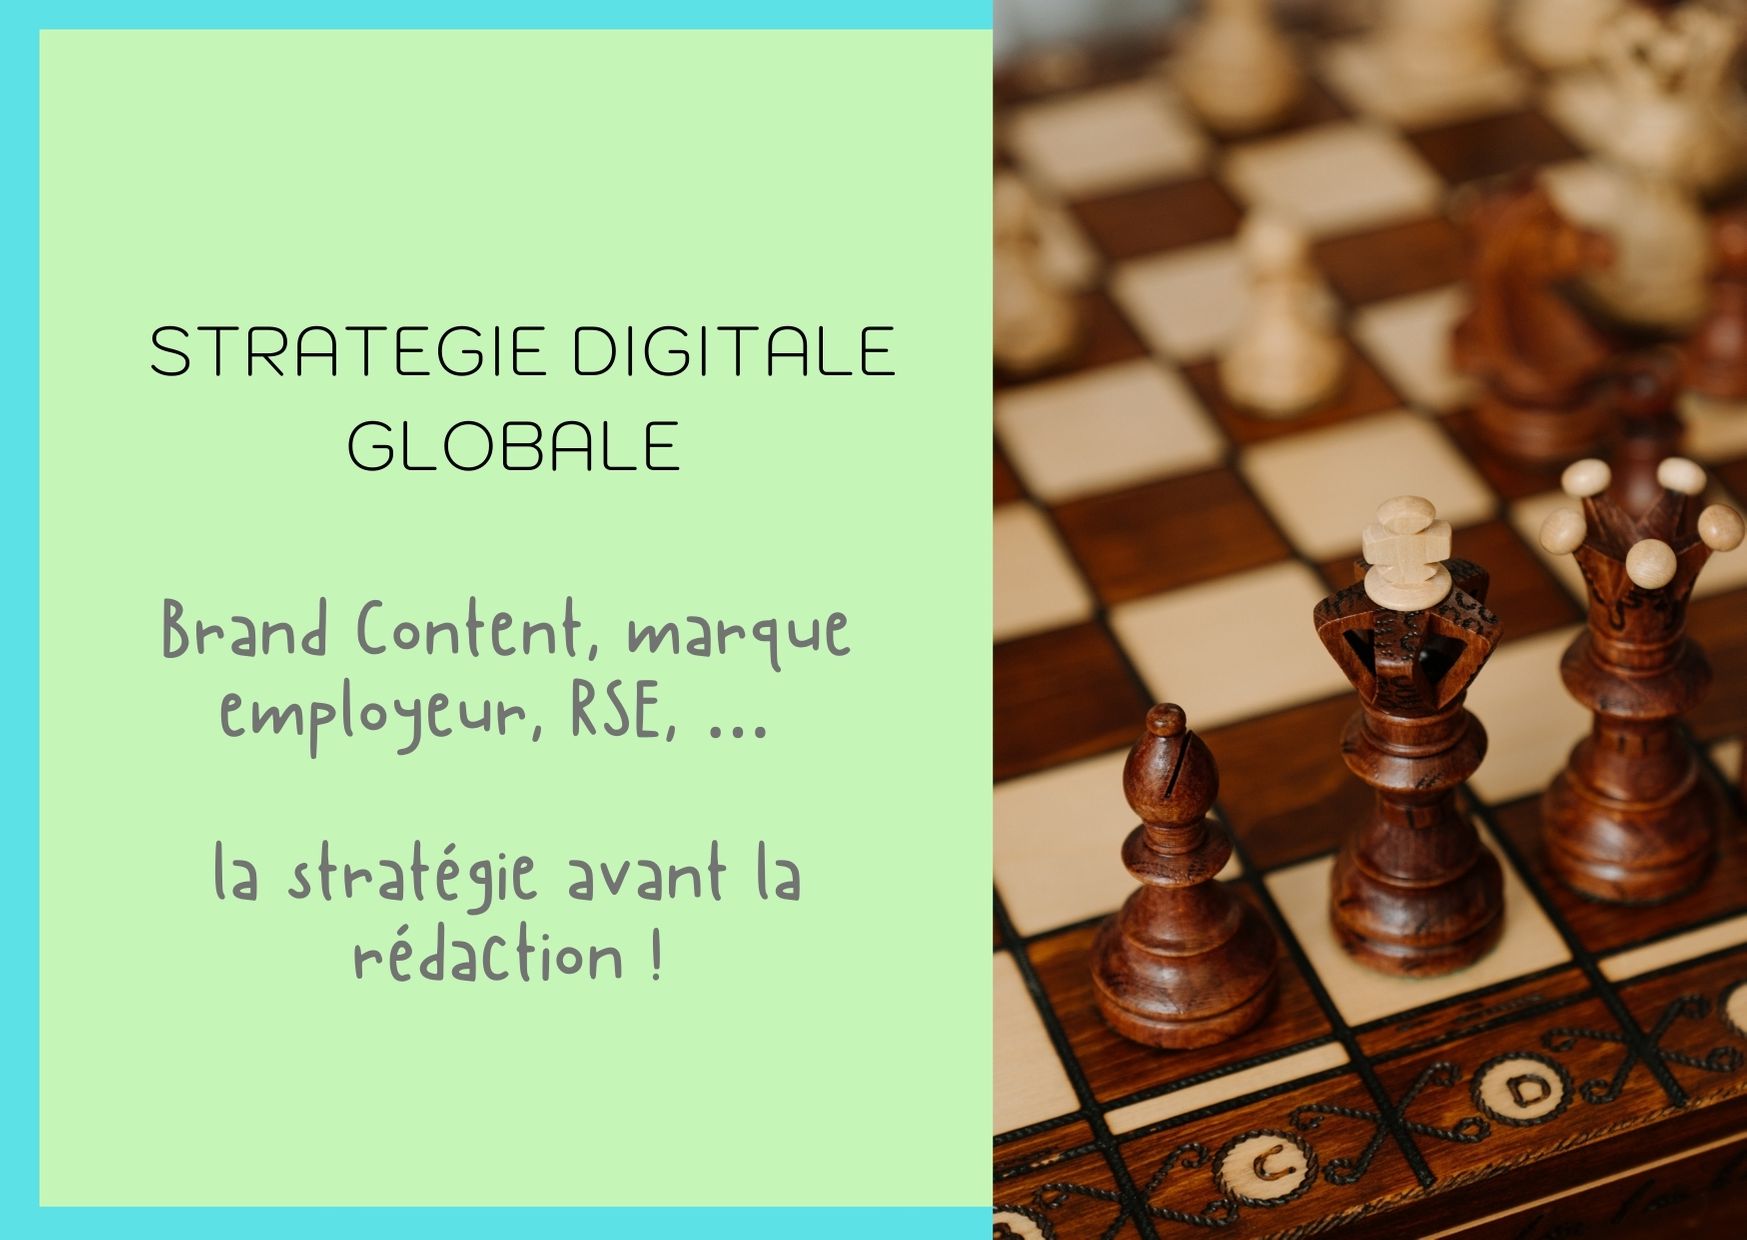 Stratégie digitale globale et rédaction de contenus